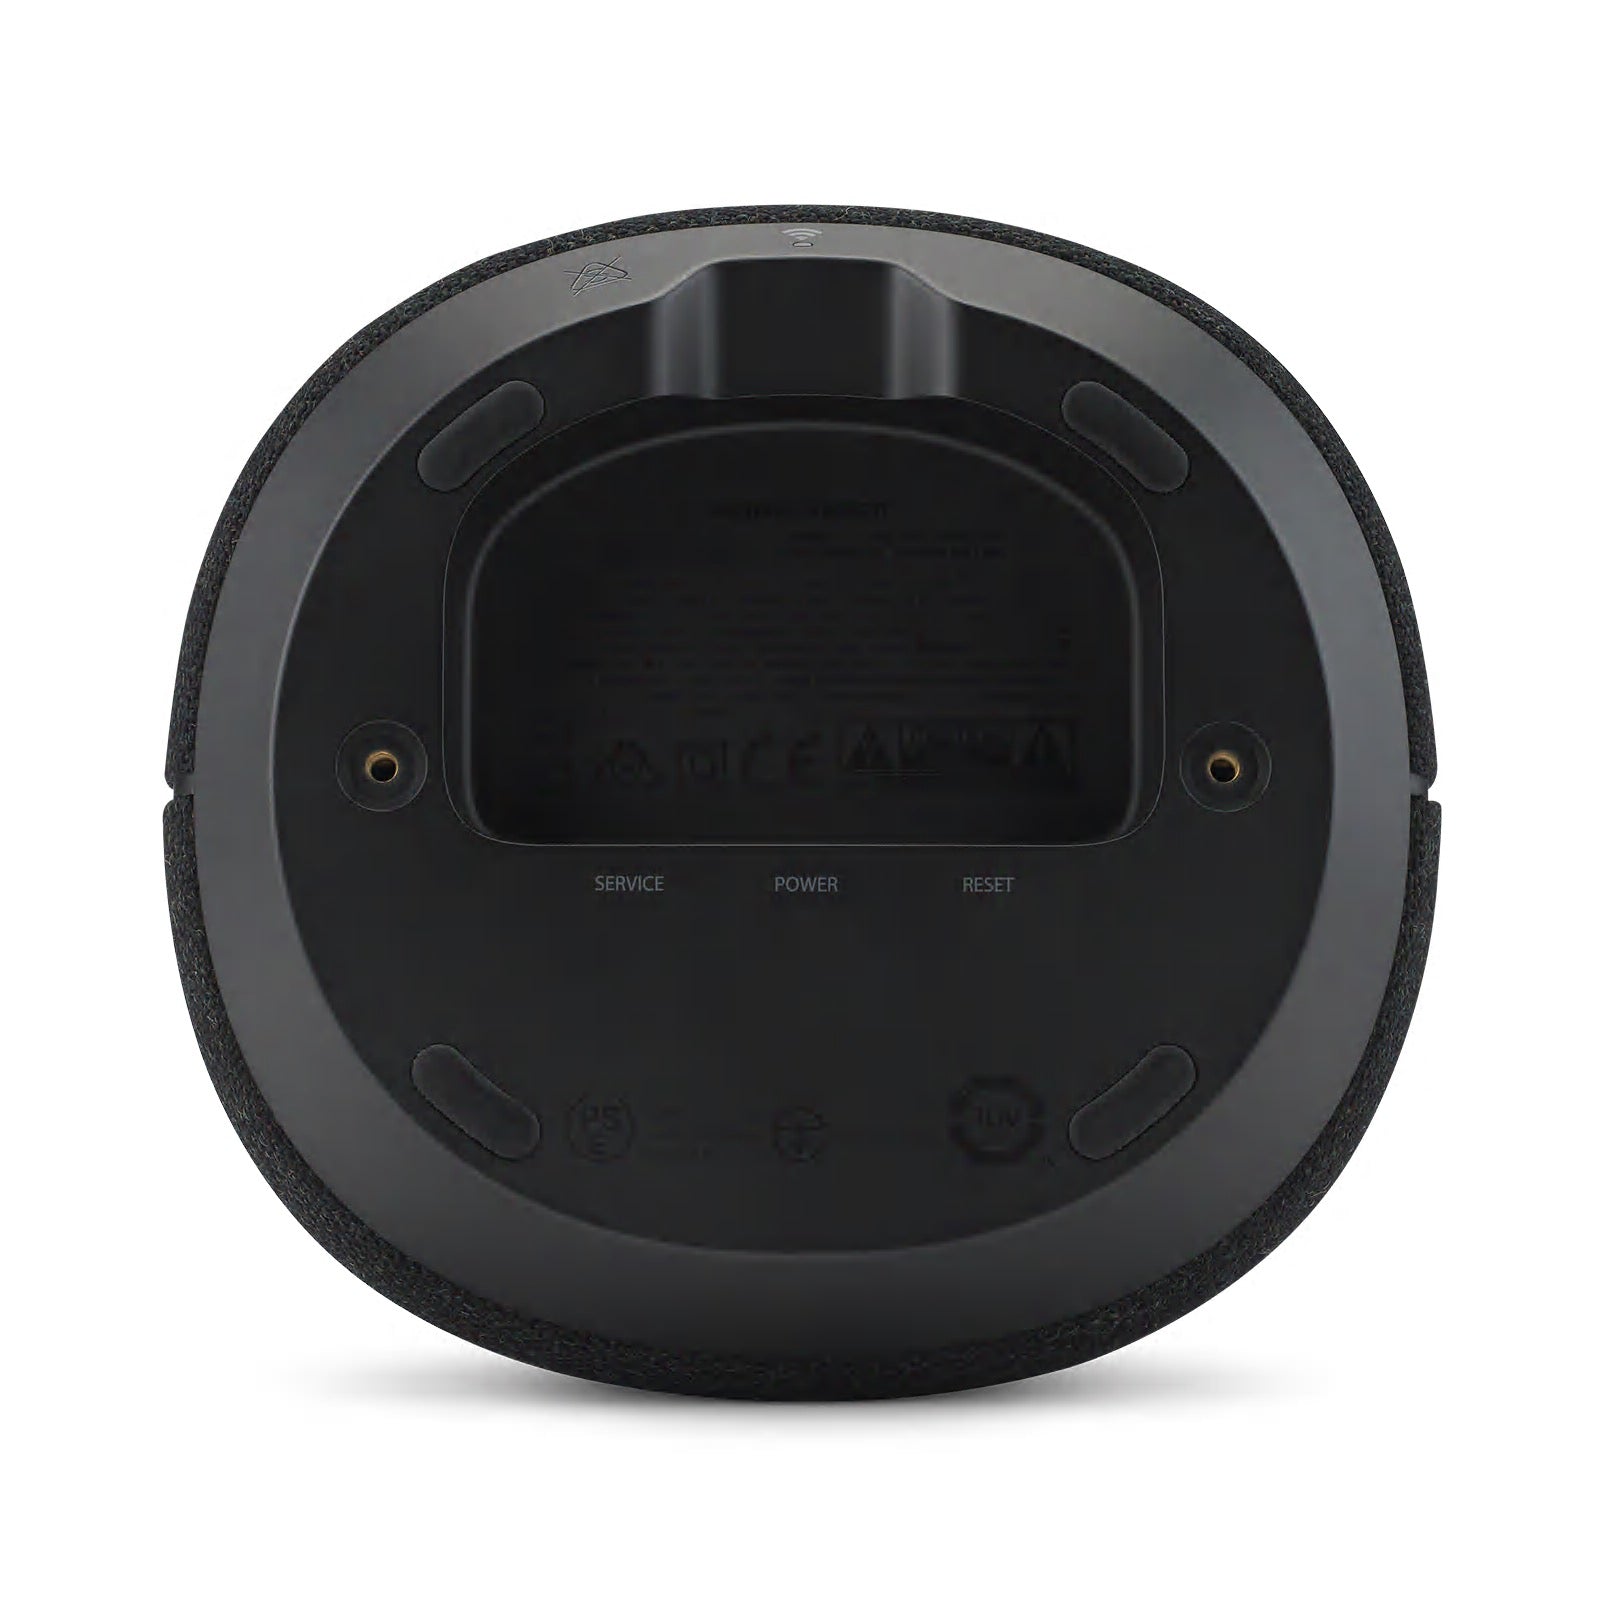 Harman Kardon Citation 100 - Bluetooth Speaker - AVStore